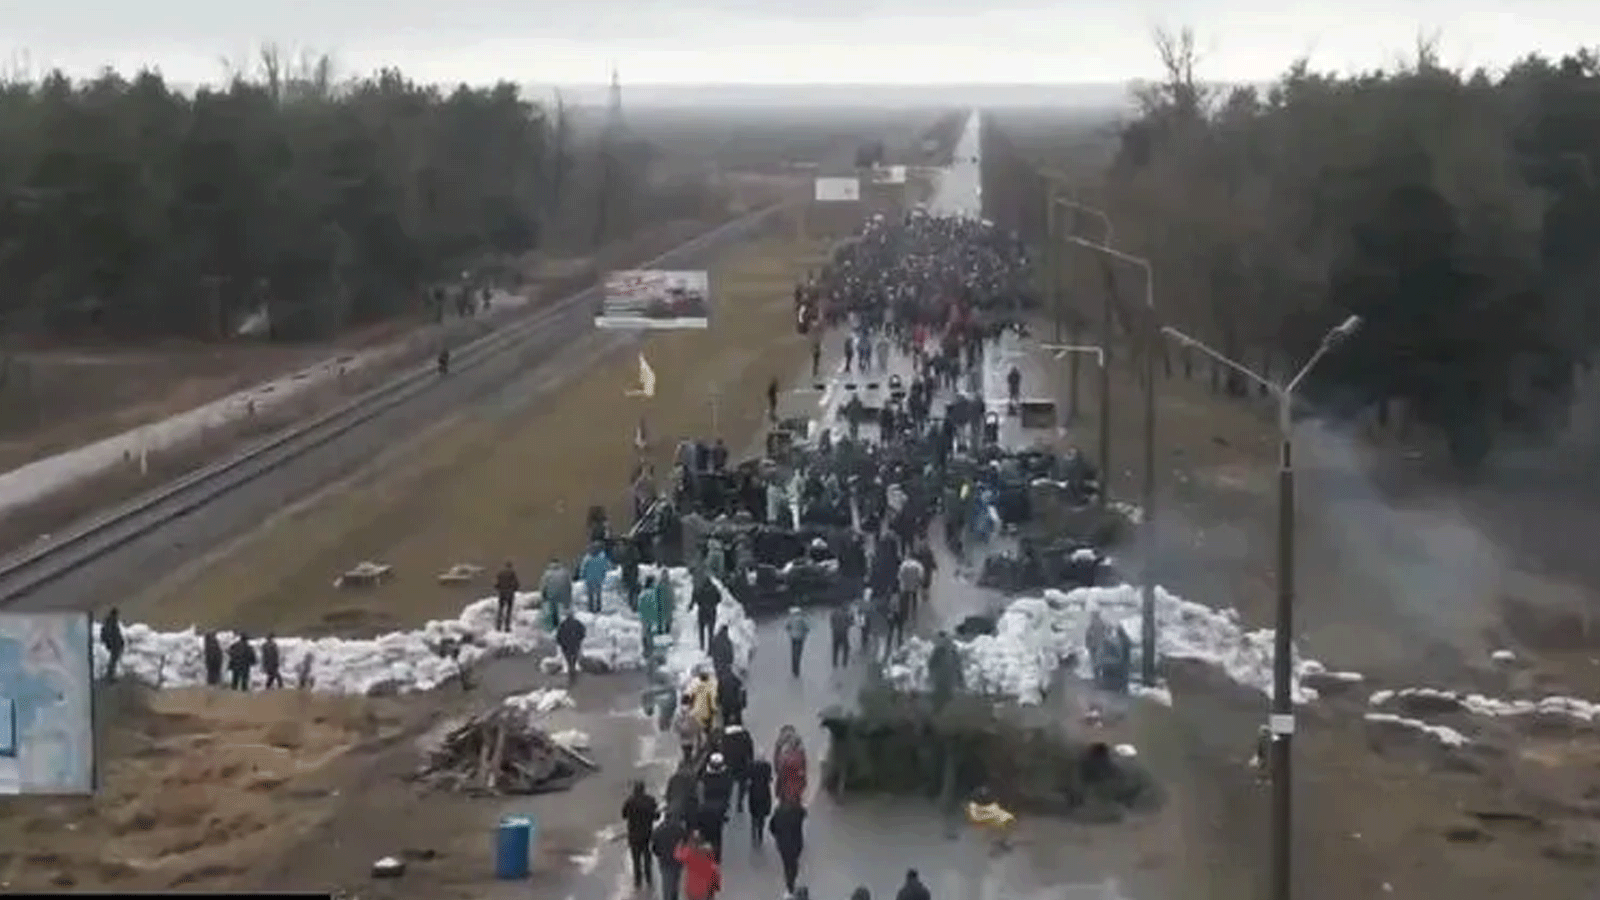 متظاهرون مدنيون في إنيرغودار في جنوب أوكرانيا، يحتجون على الحرب في المنطقة التي أصبحت تحت الاحتلال الر وسي